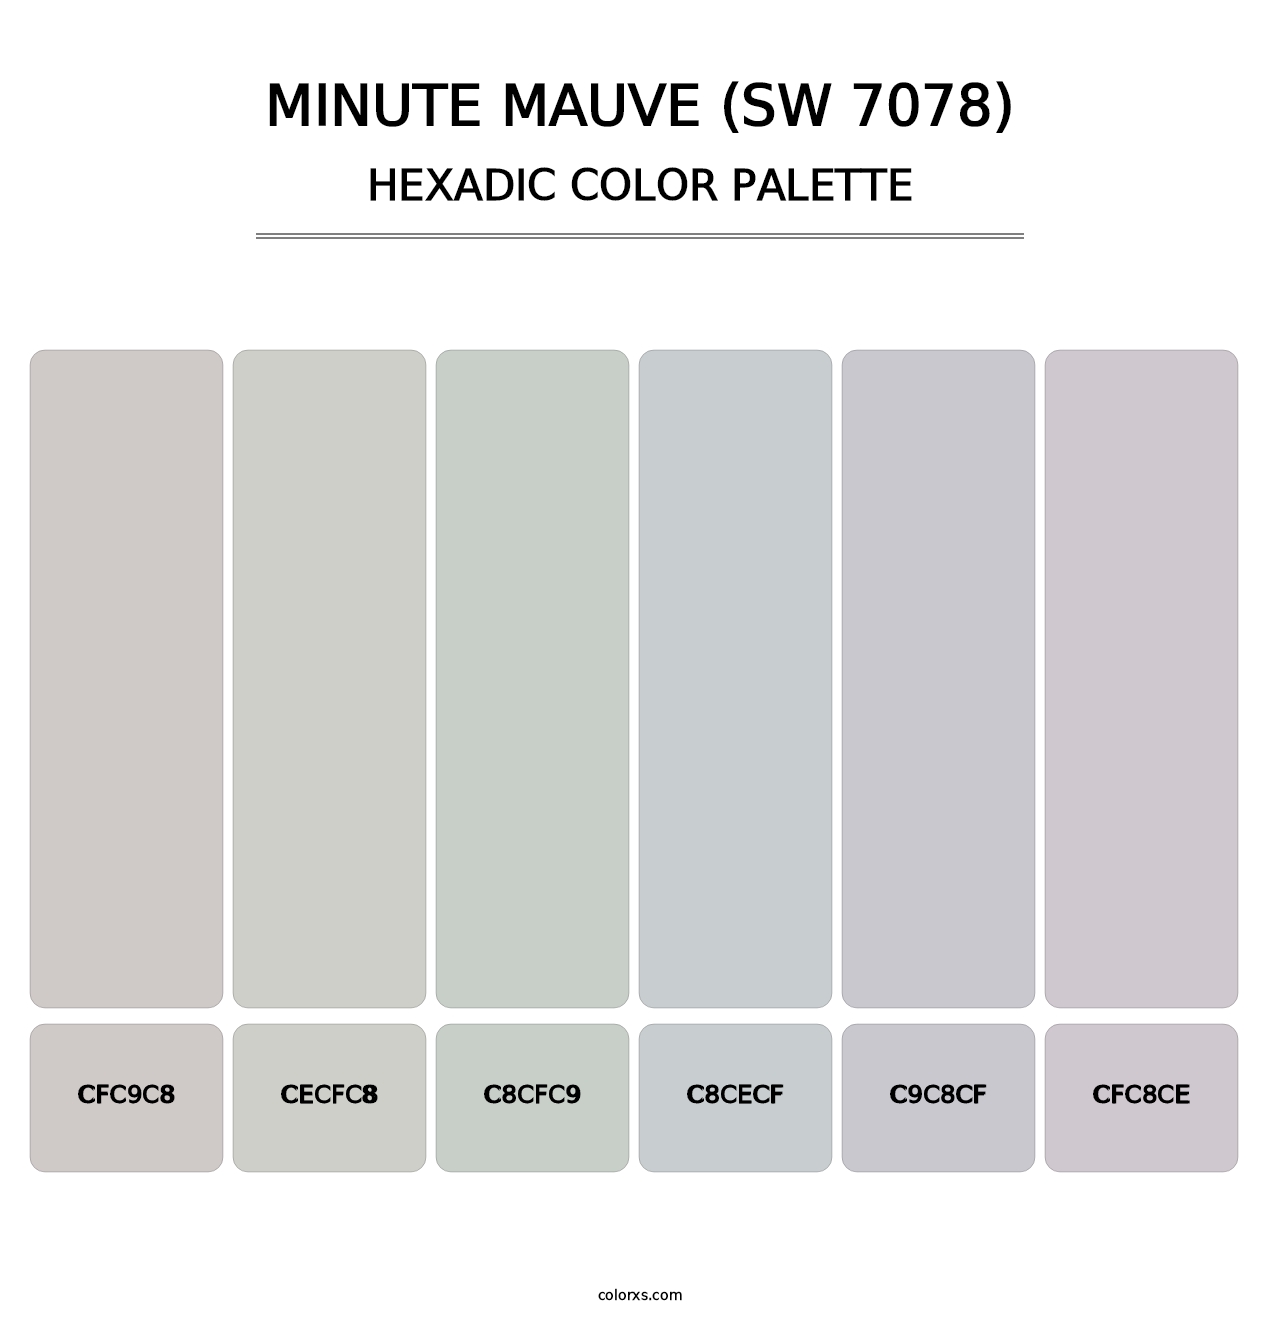 Minute Mauve (SW 7078) - Hexadic Color Palette